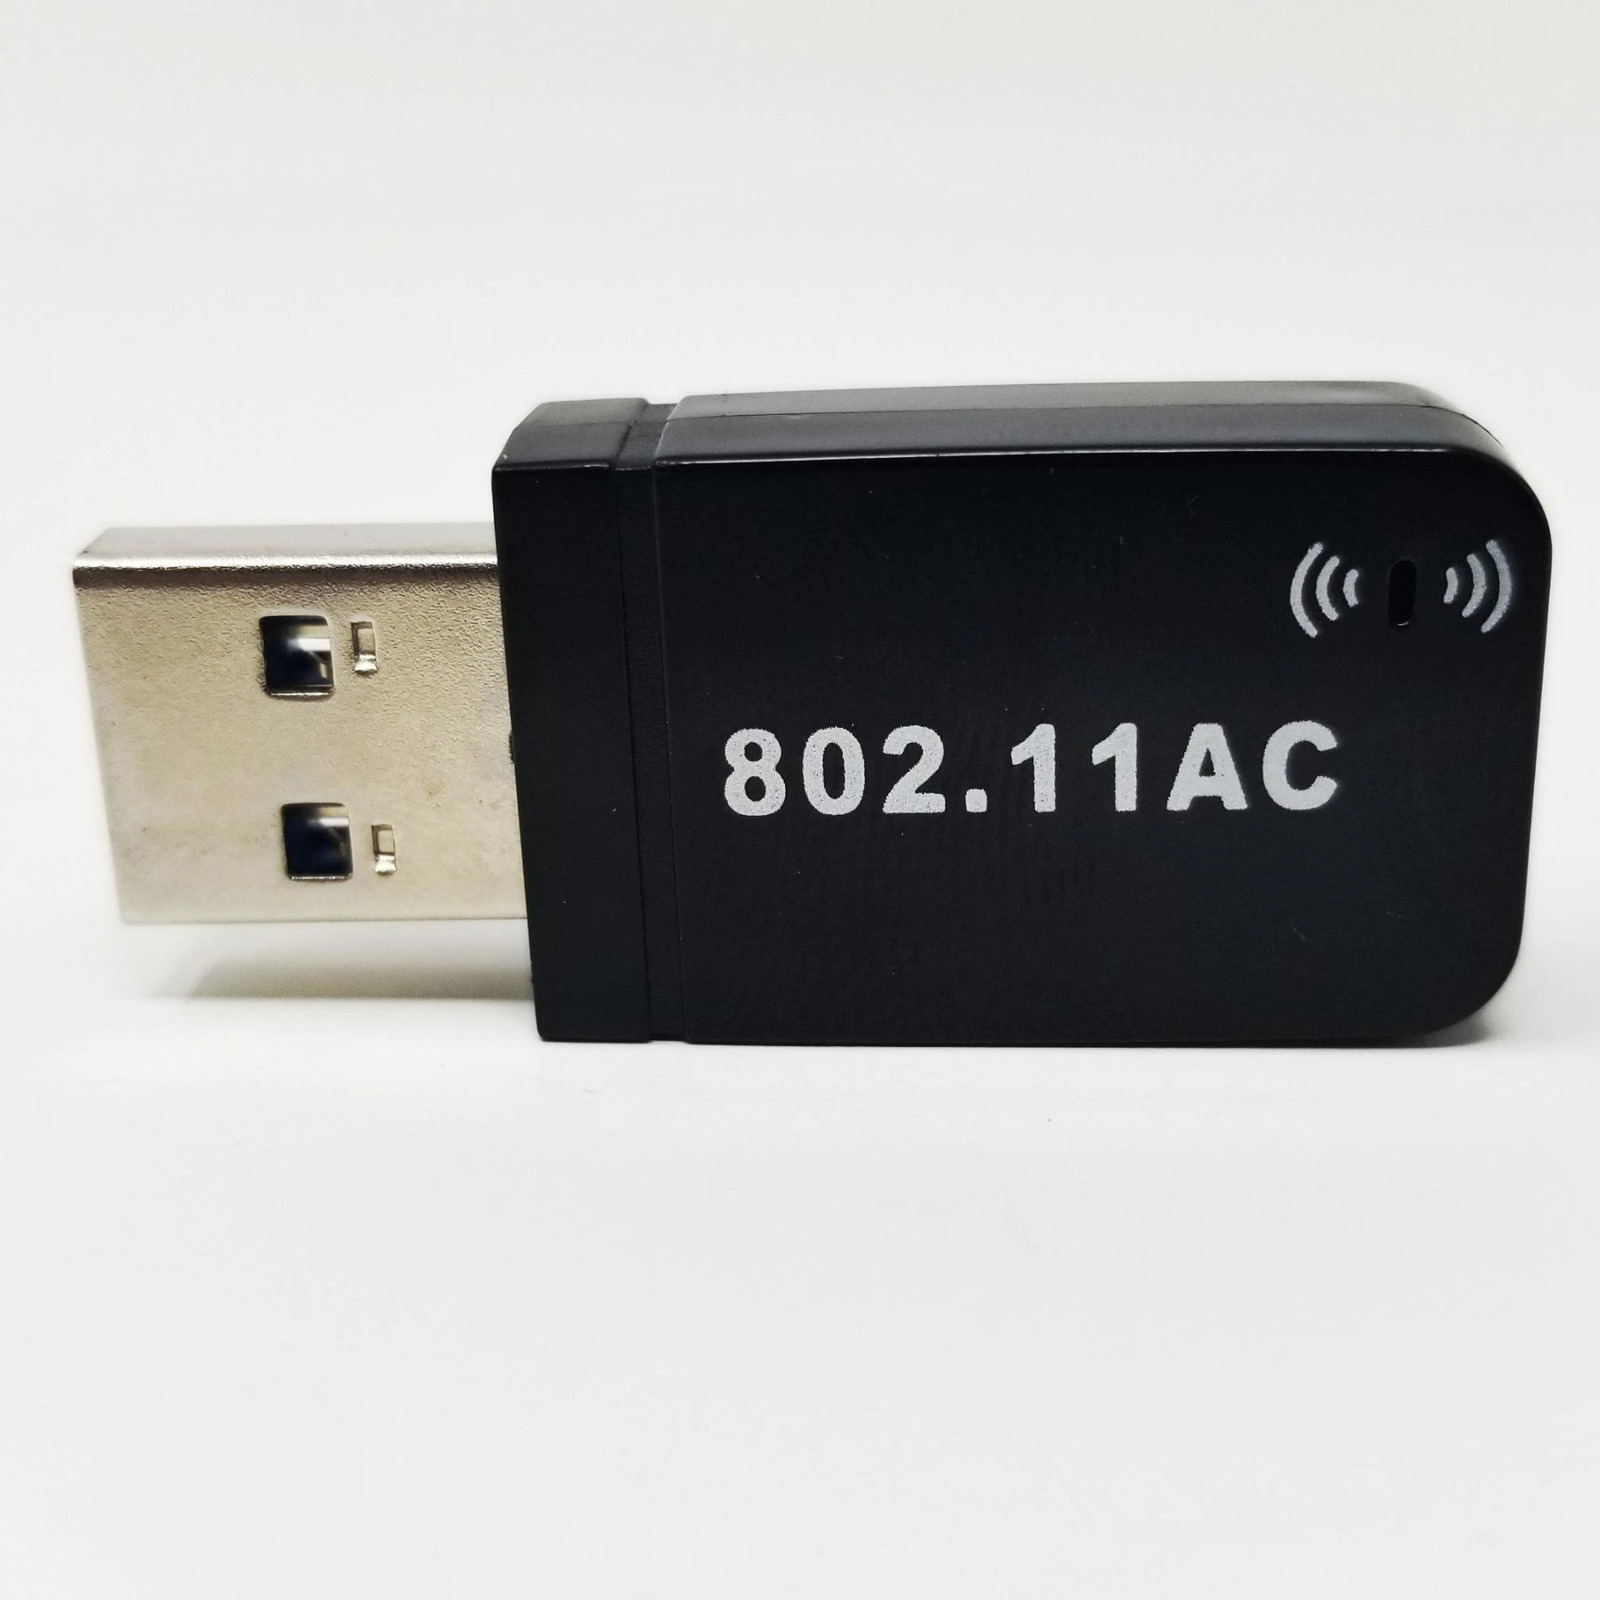 Realtek 802.11ac USB Wireless RTL8812BU